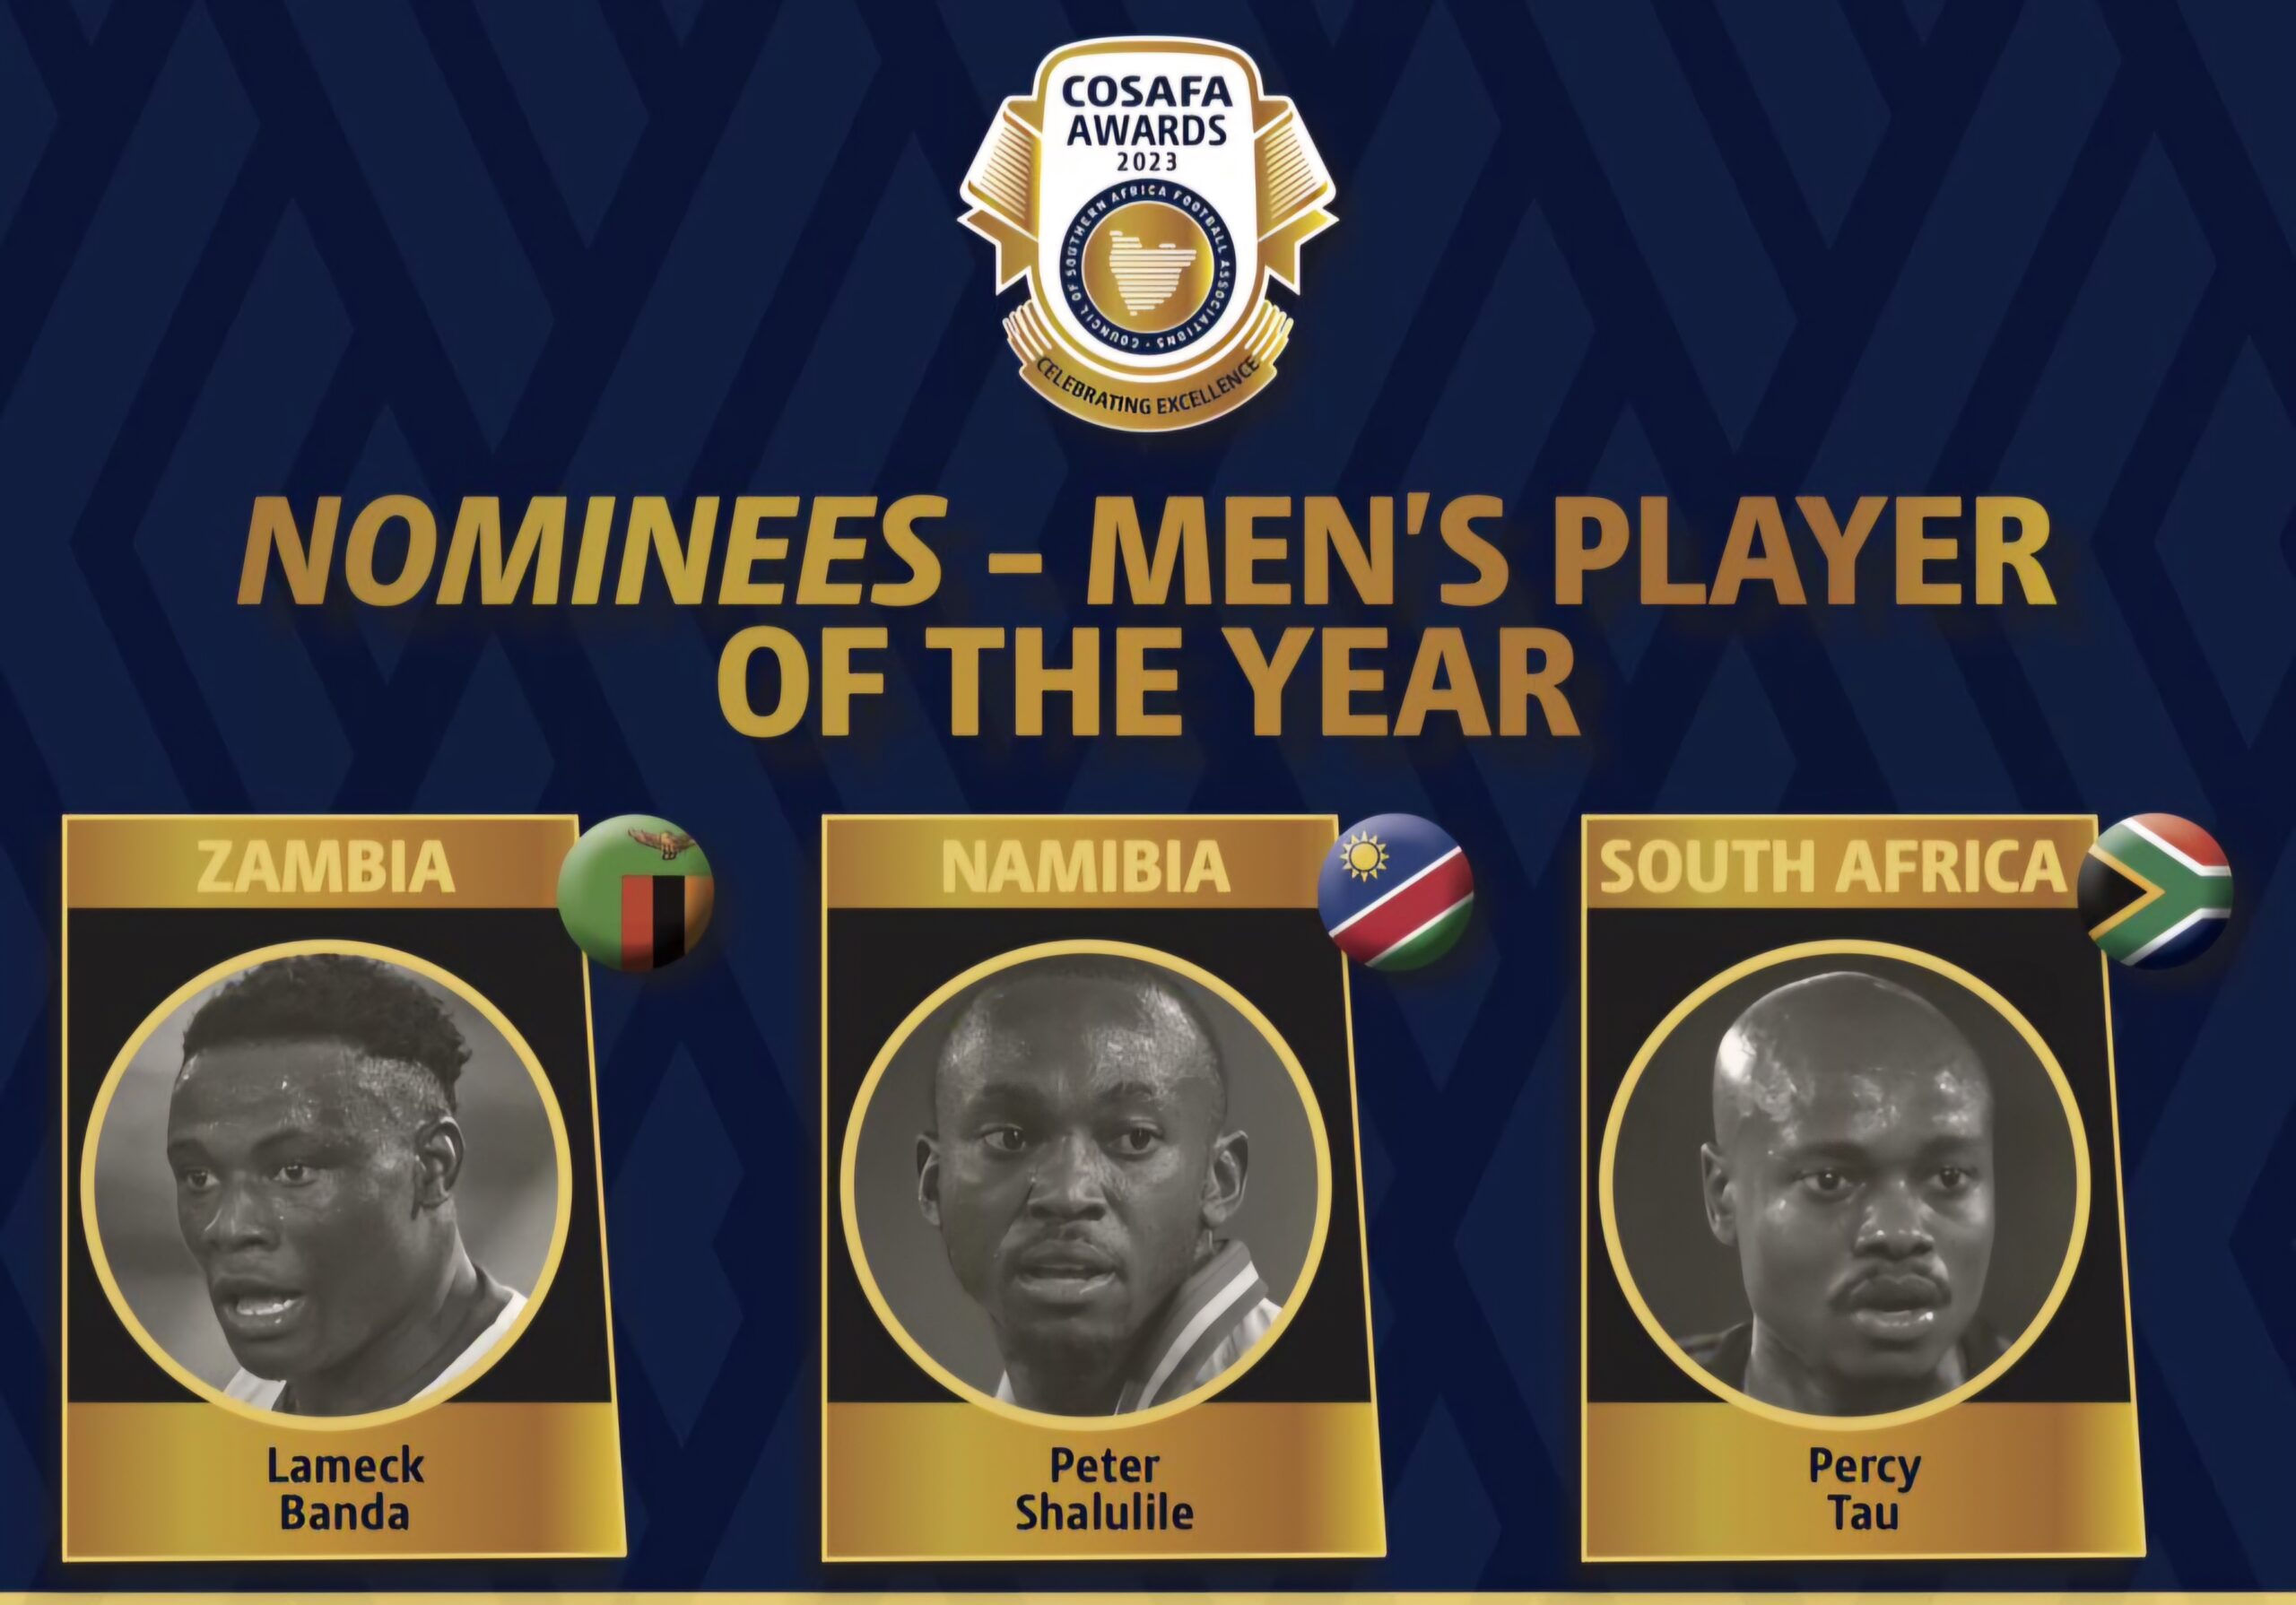 Les nominés pour le Joueur de l'année aux Cosafa Awards 2023